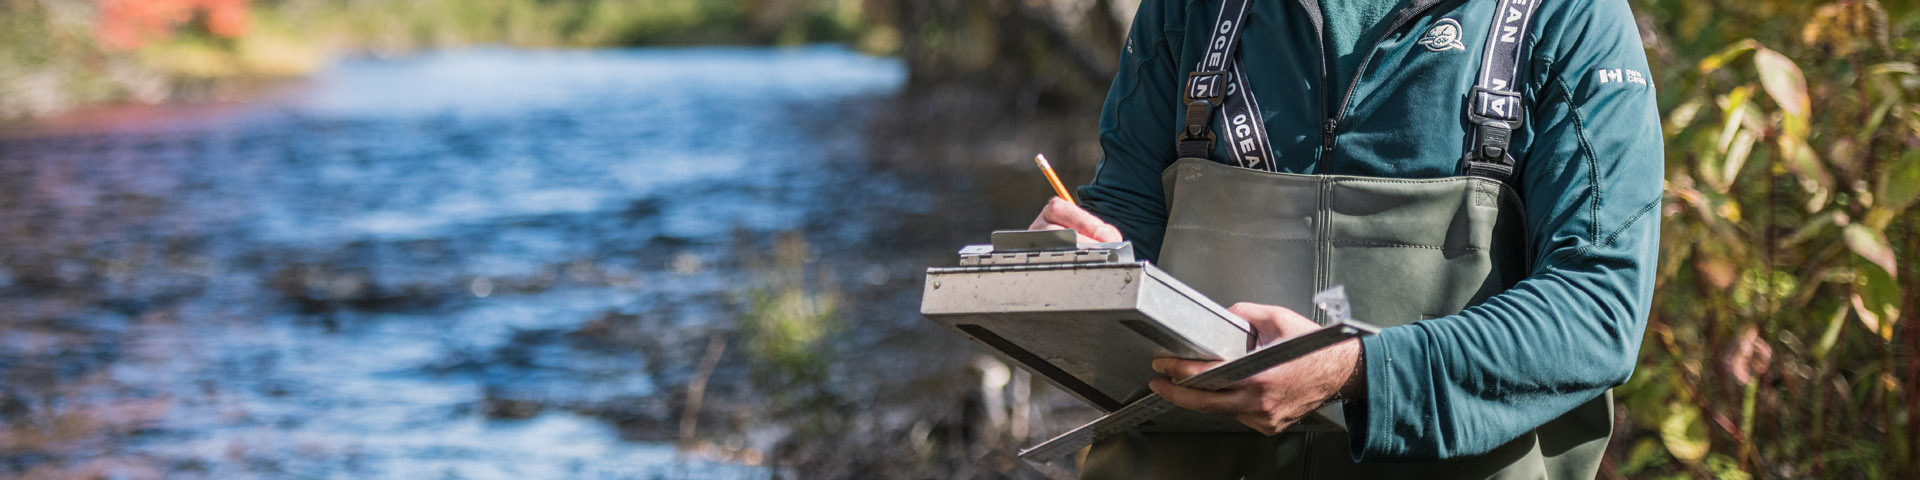 Un agent de conservation fait des tests près d'une rivière.